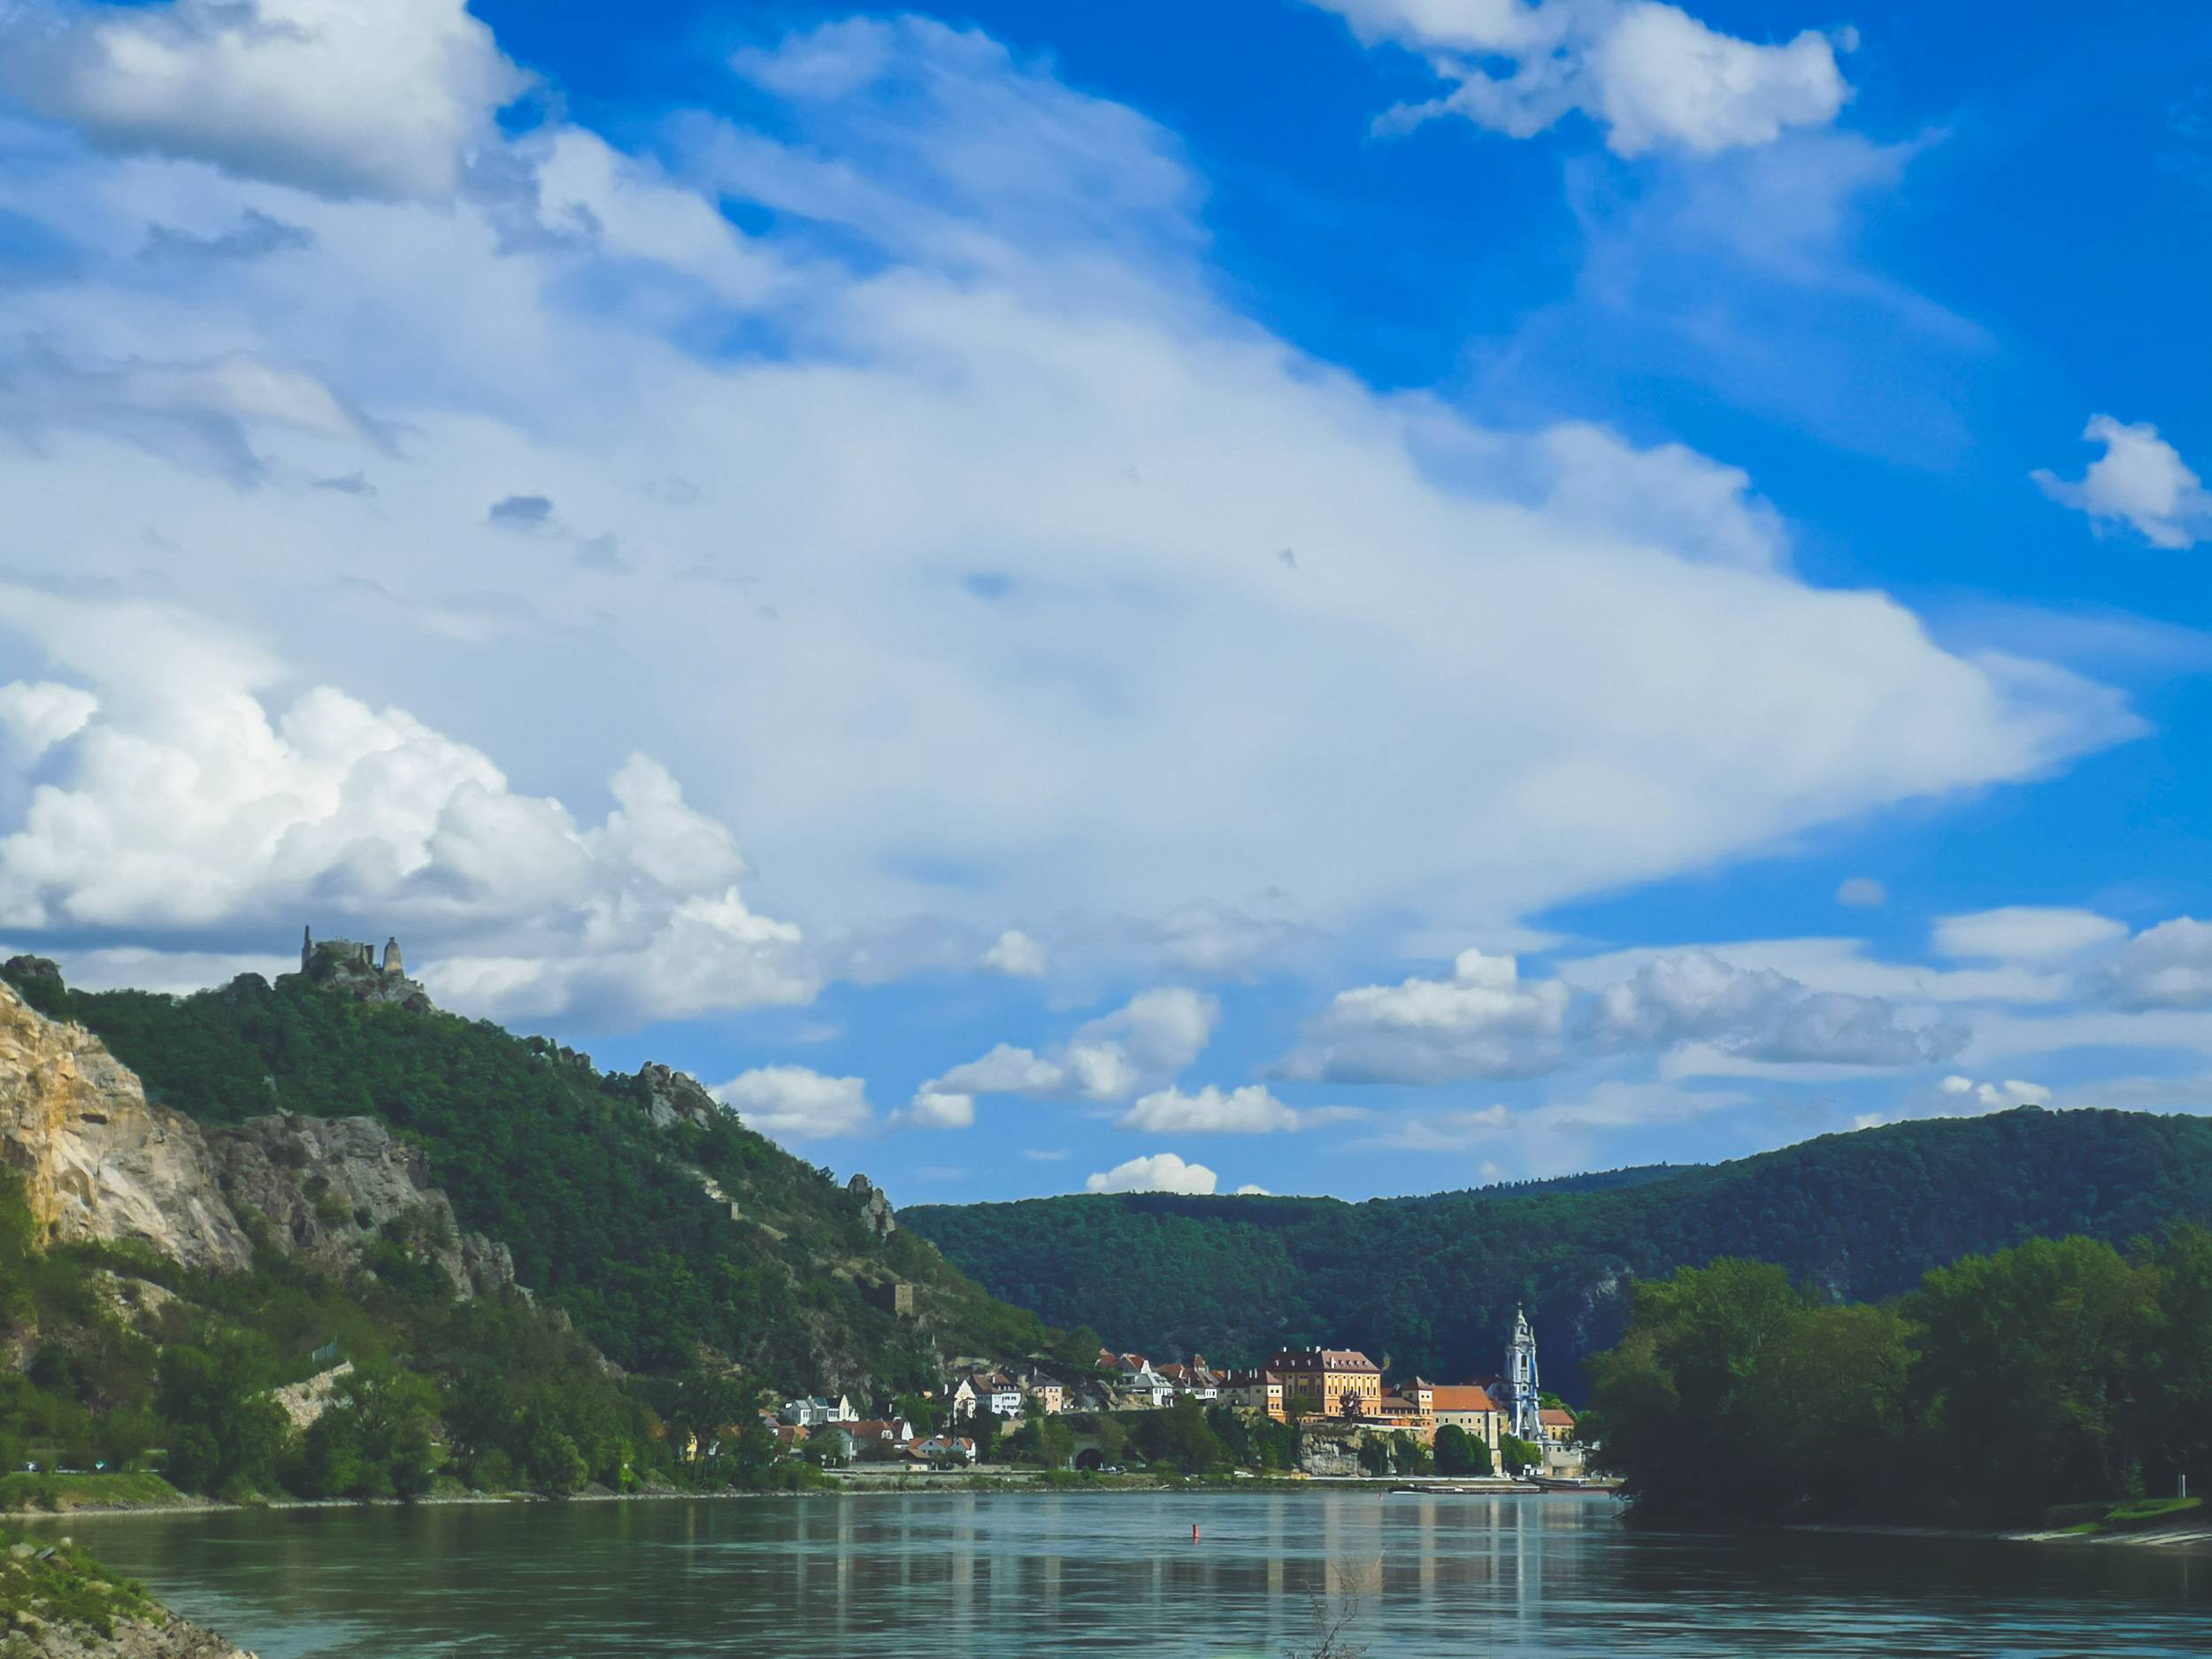 Dürnstein by Danube River in Wachau Valley, Austria